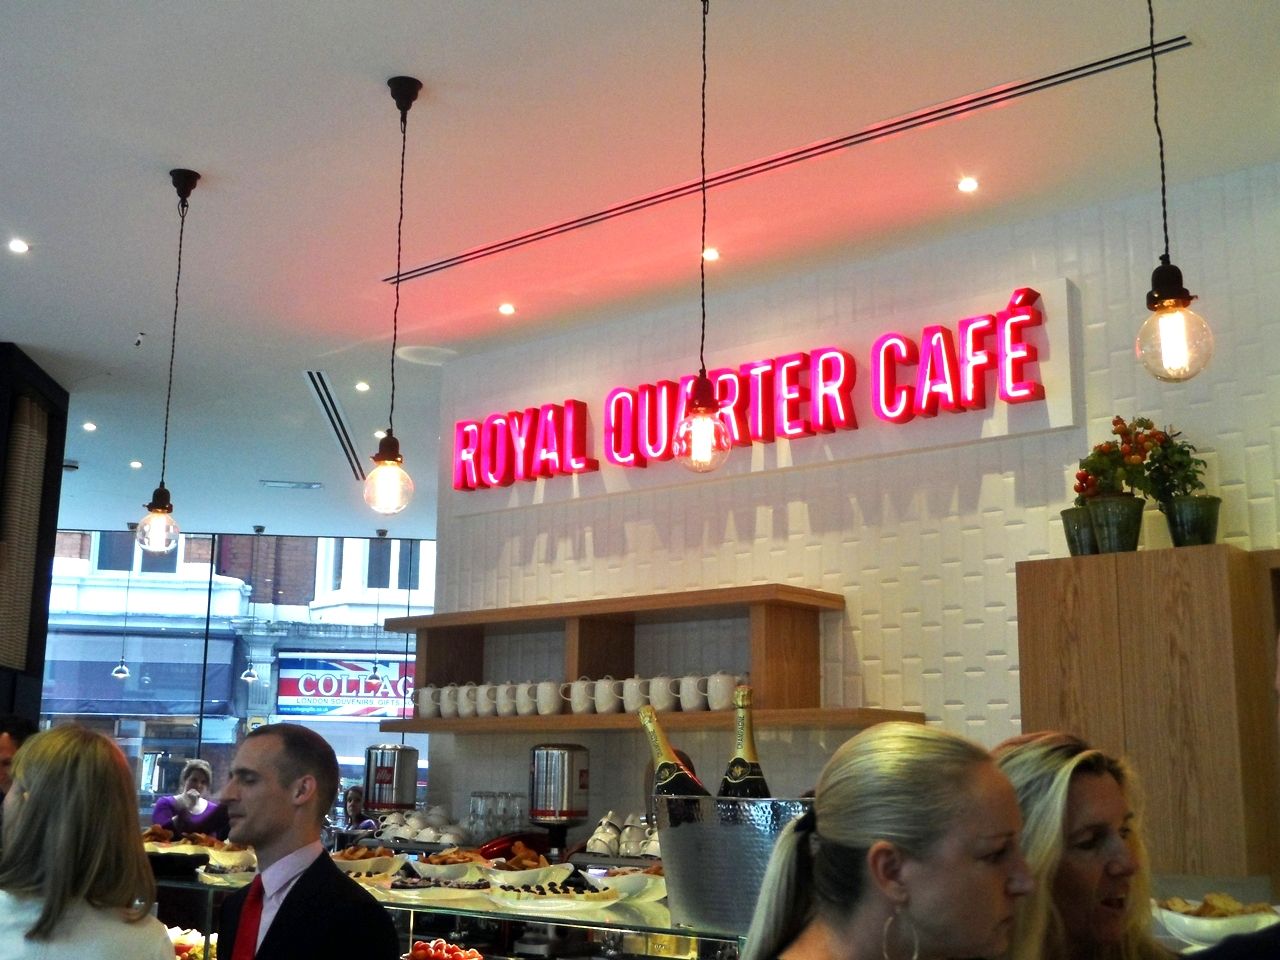 Royal Quarter Cafe